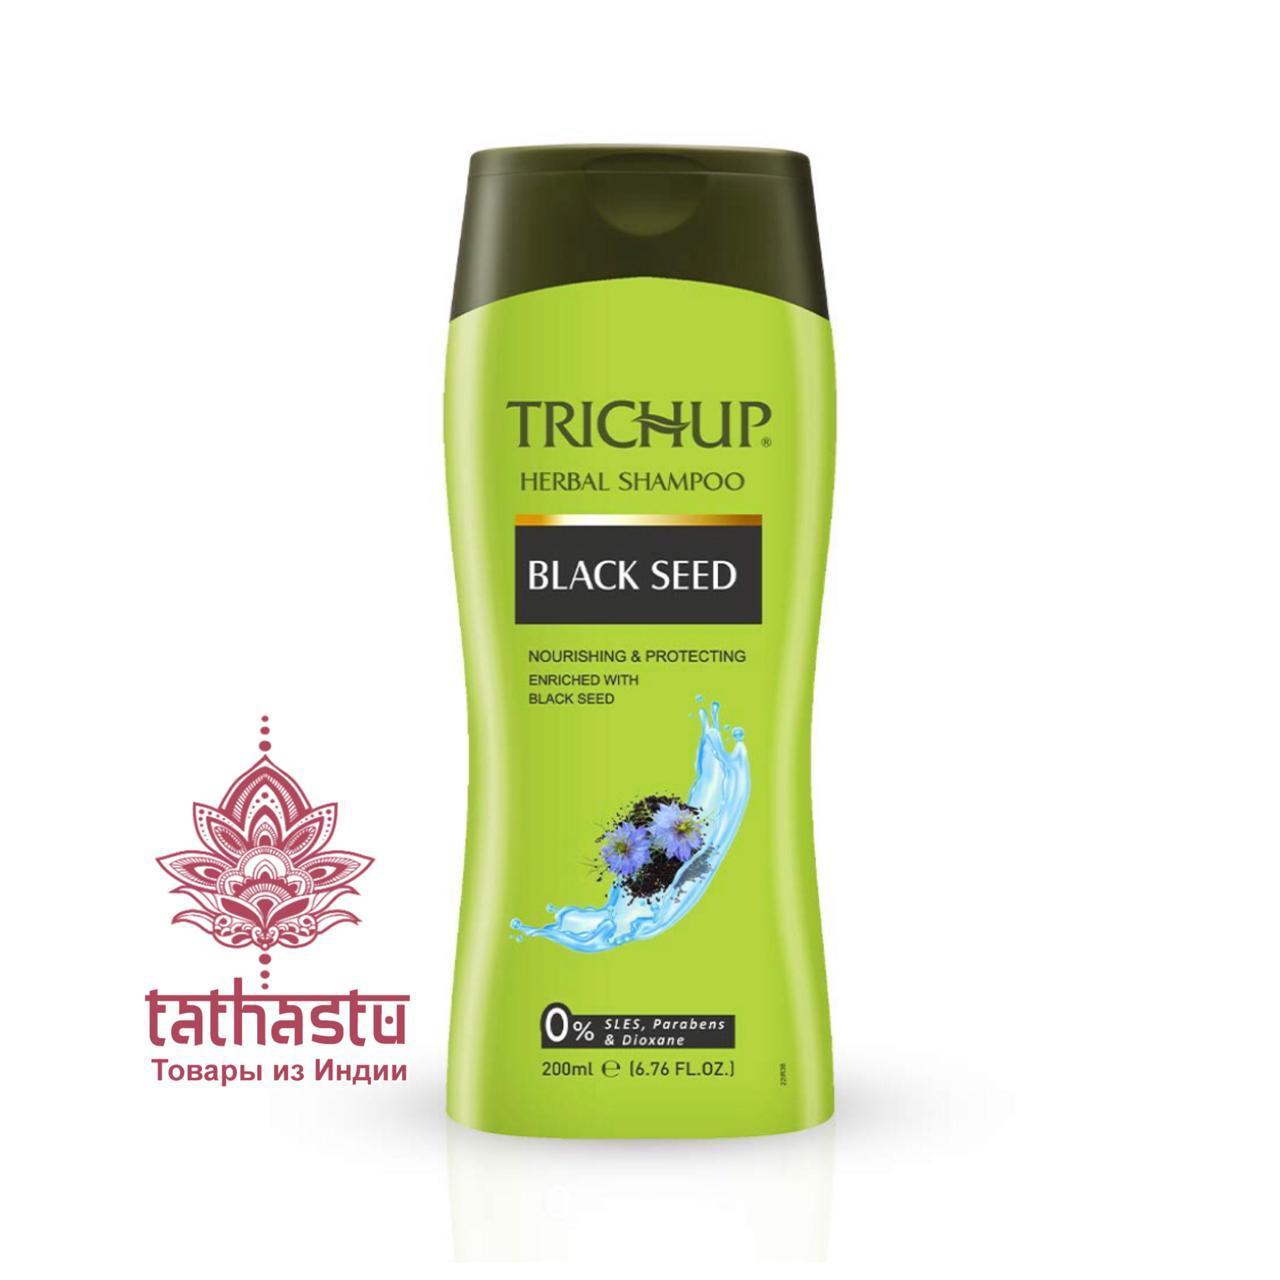 Шампунь Тричуп с черным тмином (TRICHUP Herbal Black Seed Shampoo) . Tathastu товары и индии